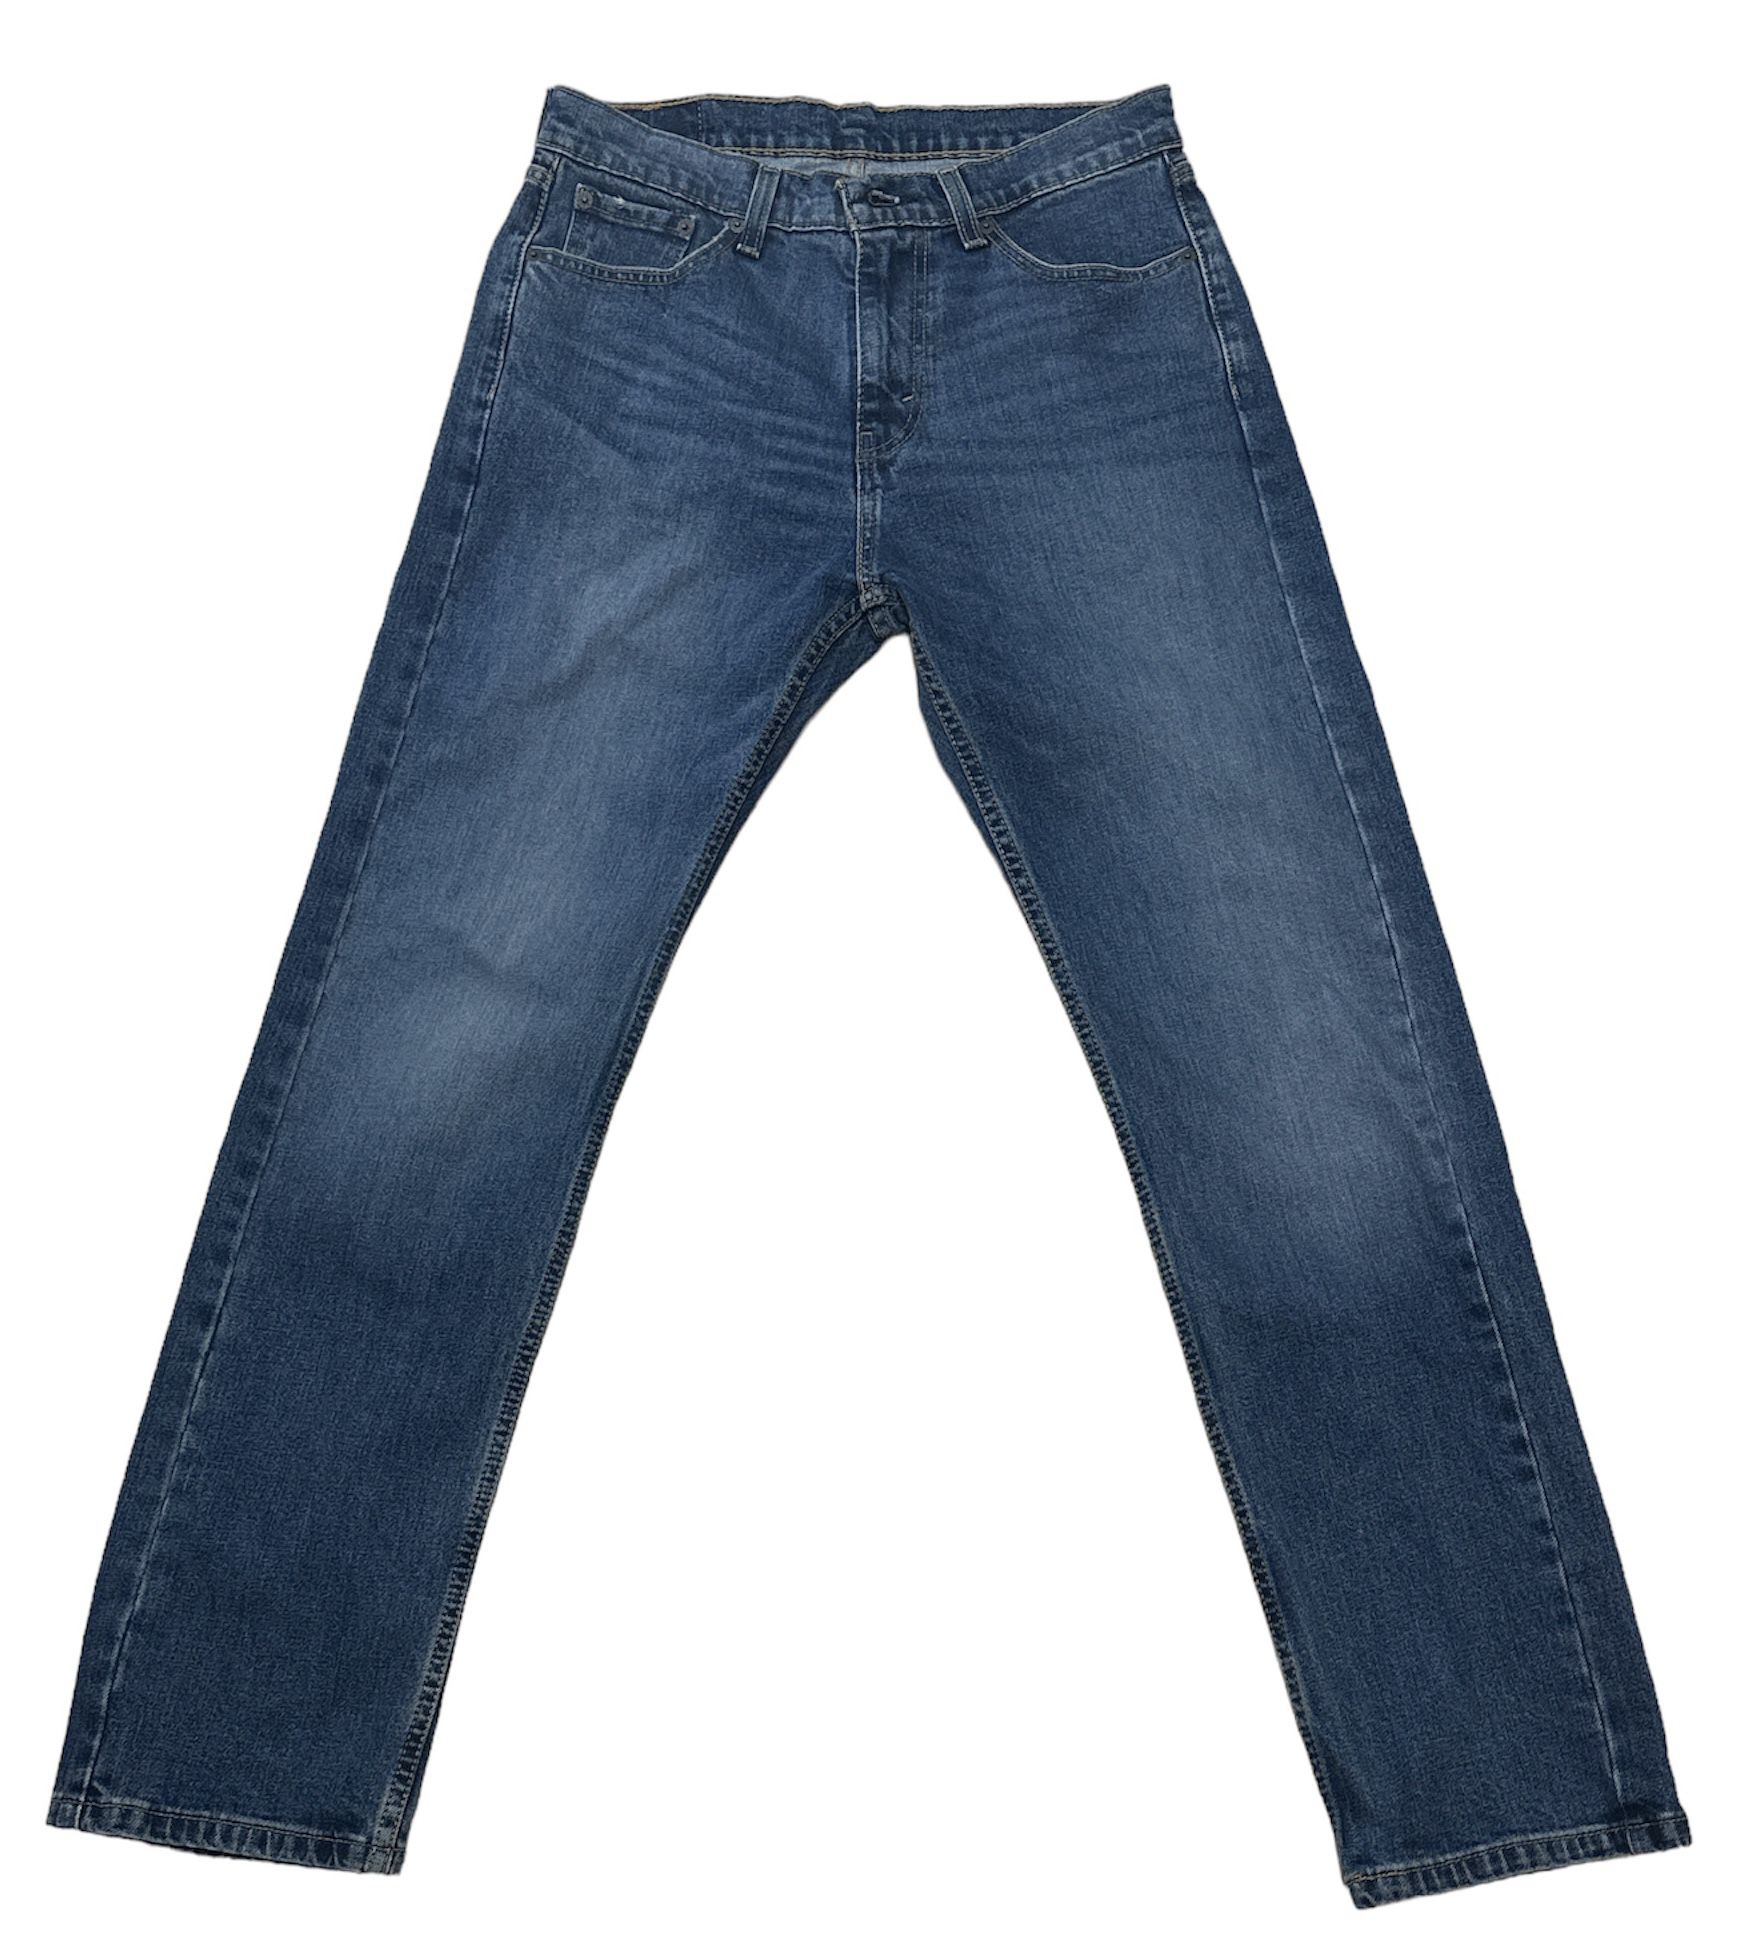 Levi’s Men’s 505 Regular Classic Fit Blue Denim Jeans Size 30/32